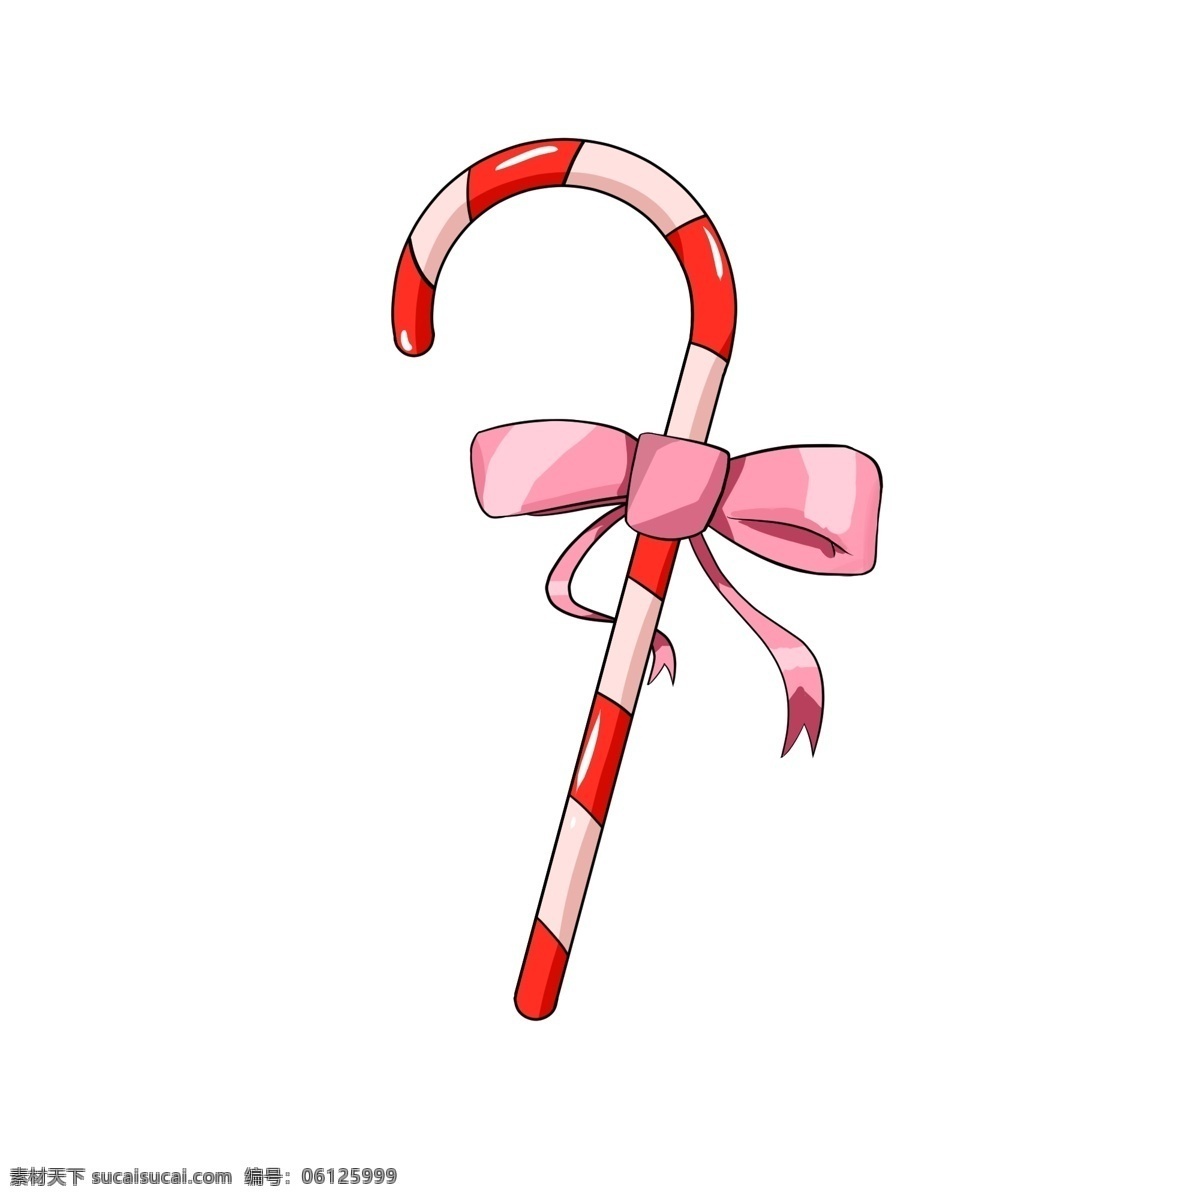 红色 拐杖 糖 插画 红色的拐杖糖 漂亮的拐杖糖 创意拐杖糖 立体拐杖糖 粉色的蝴蝶结 拐杖糖插画